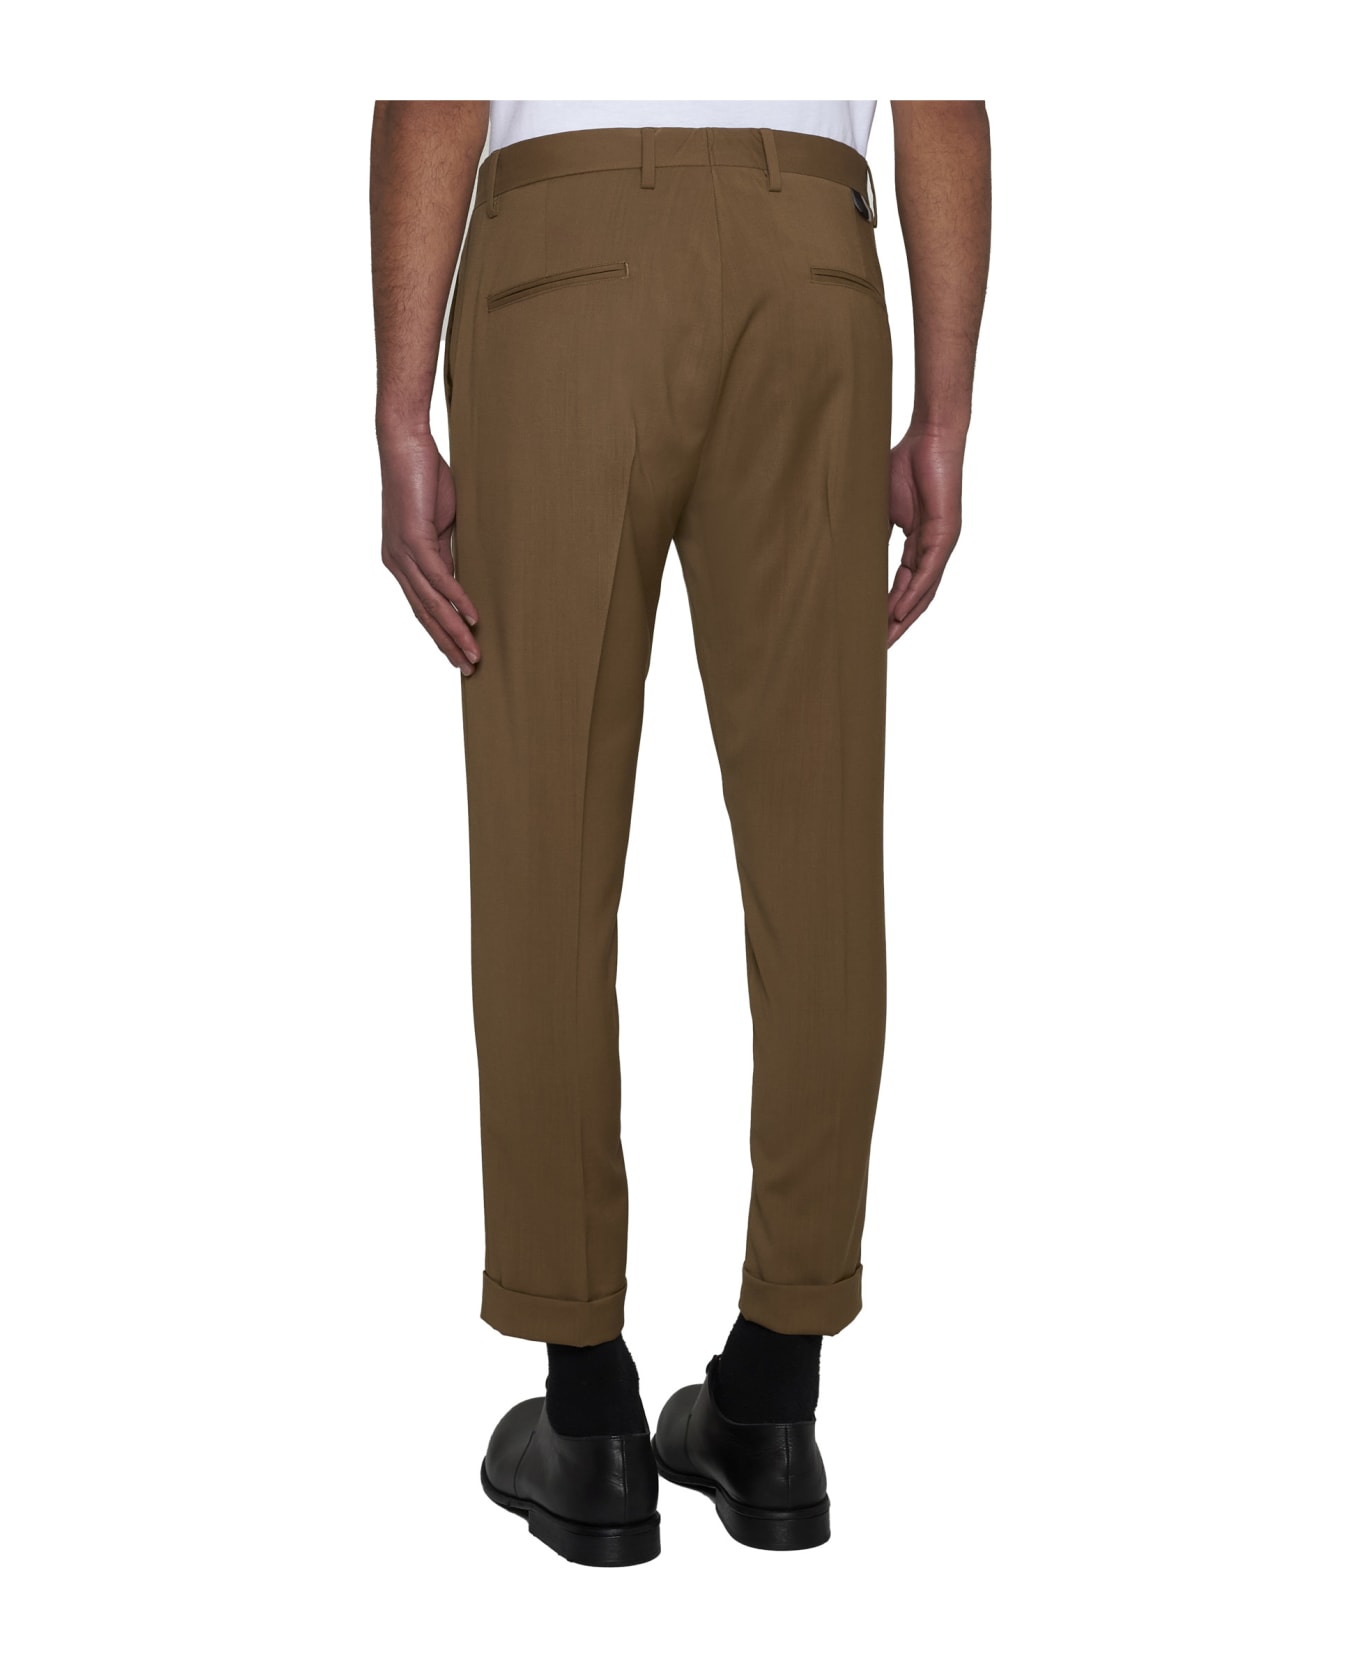 Low Brand Pants - Safari